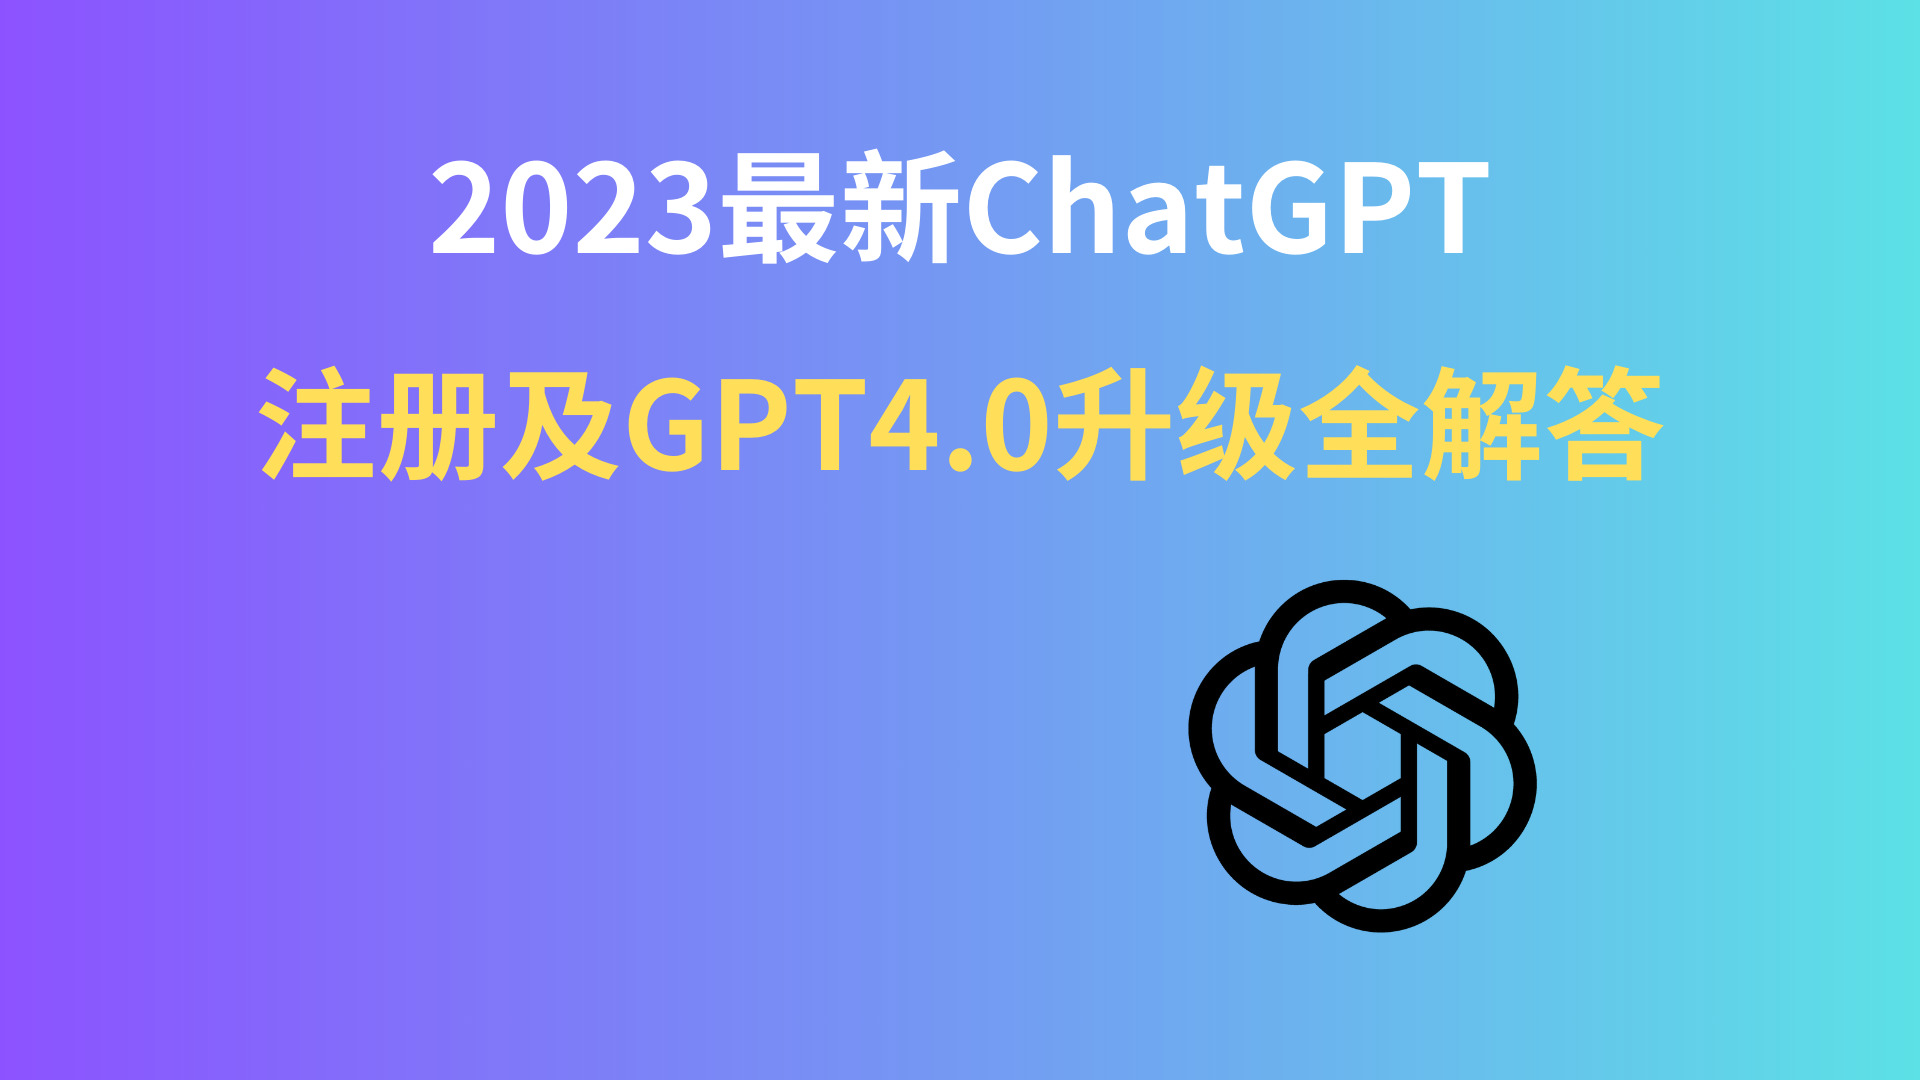 2023最新chatGPT注册及GPT4.0升级全解答！！给你讲清楚GPT相关所有细节 - 哔哩哔哩